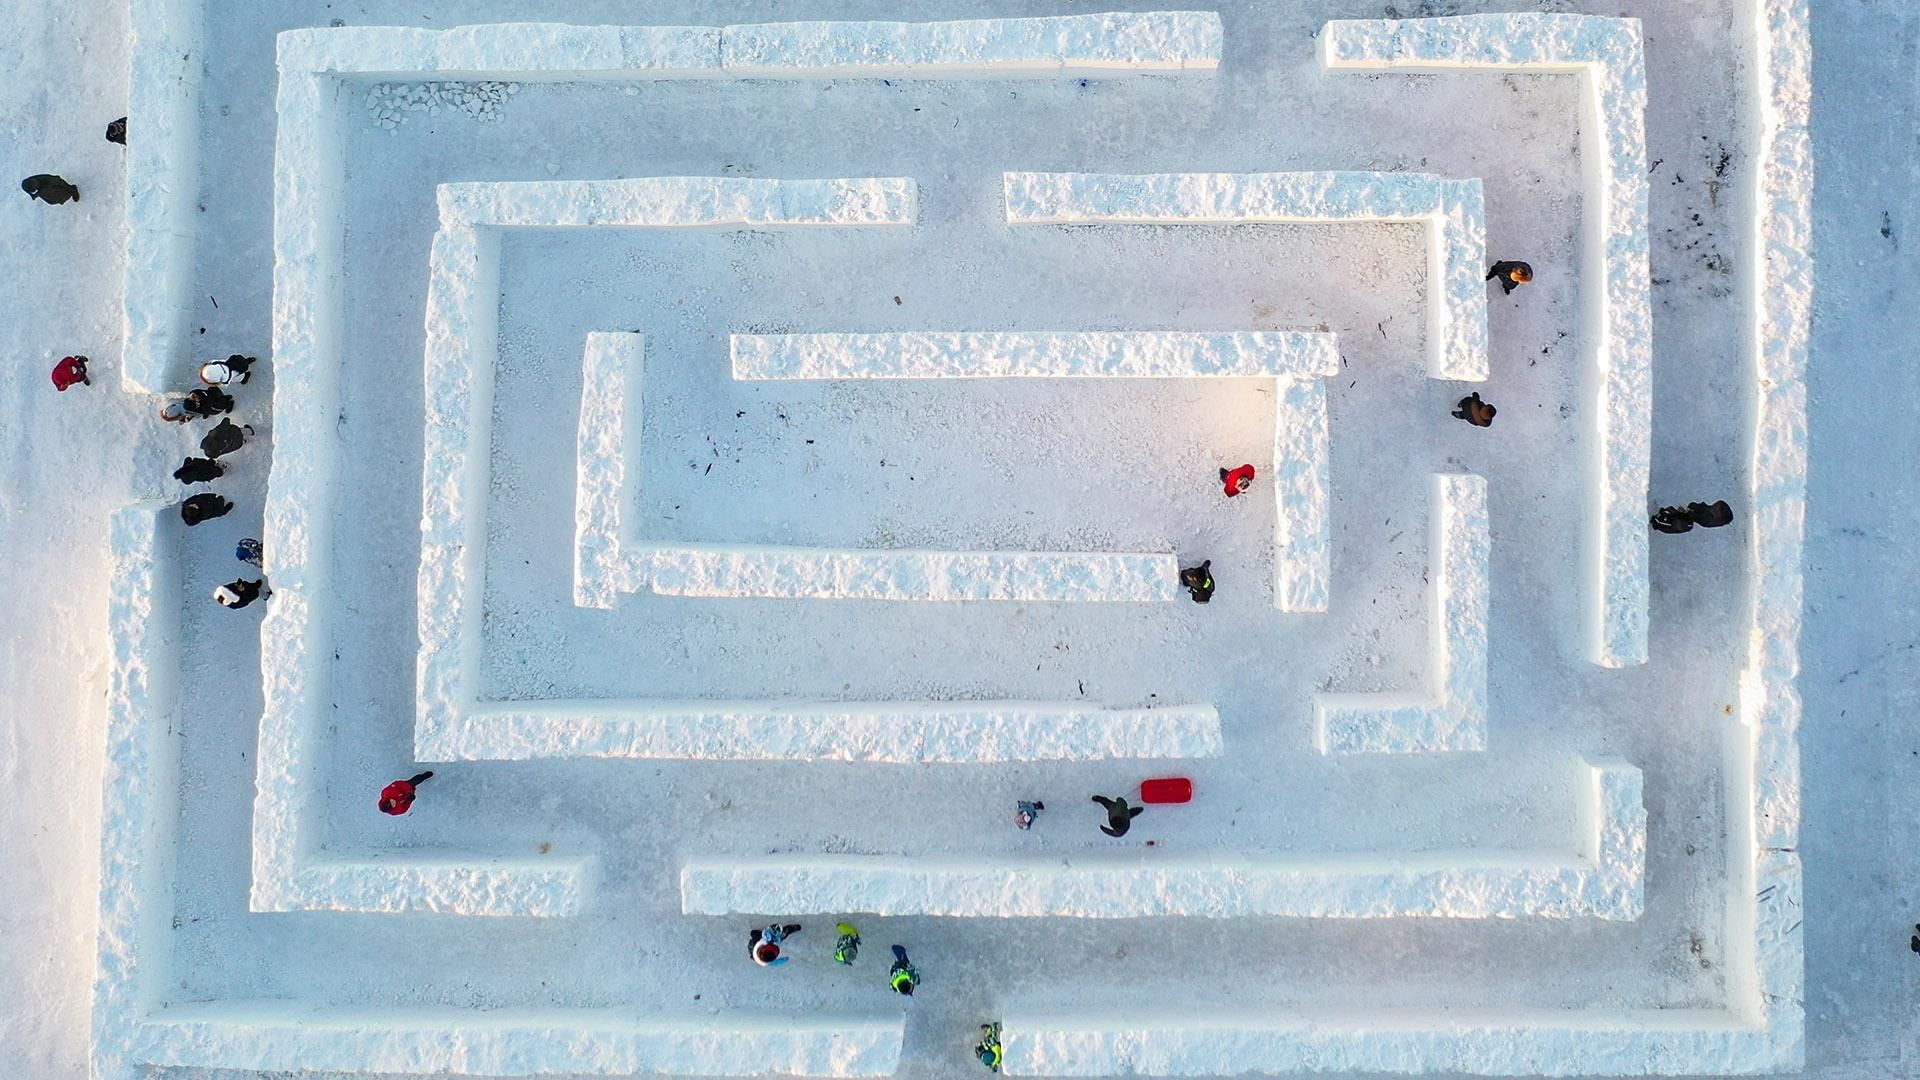 Посмотри ка на этот ледовый лабиринт. Лабиринт из снега. Лабиринт из снега в детском саду. Снежный Лабиринт для детей. Ледяной Лабиринт.